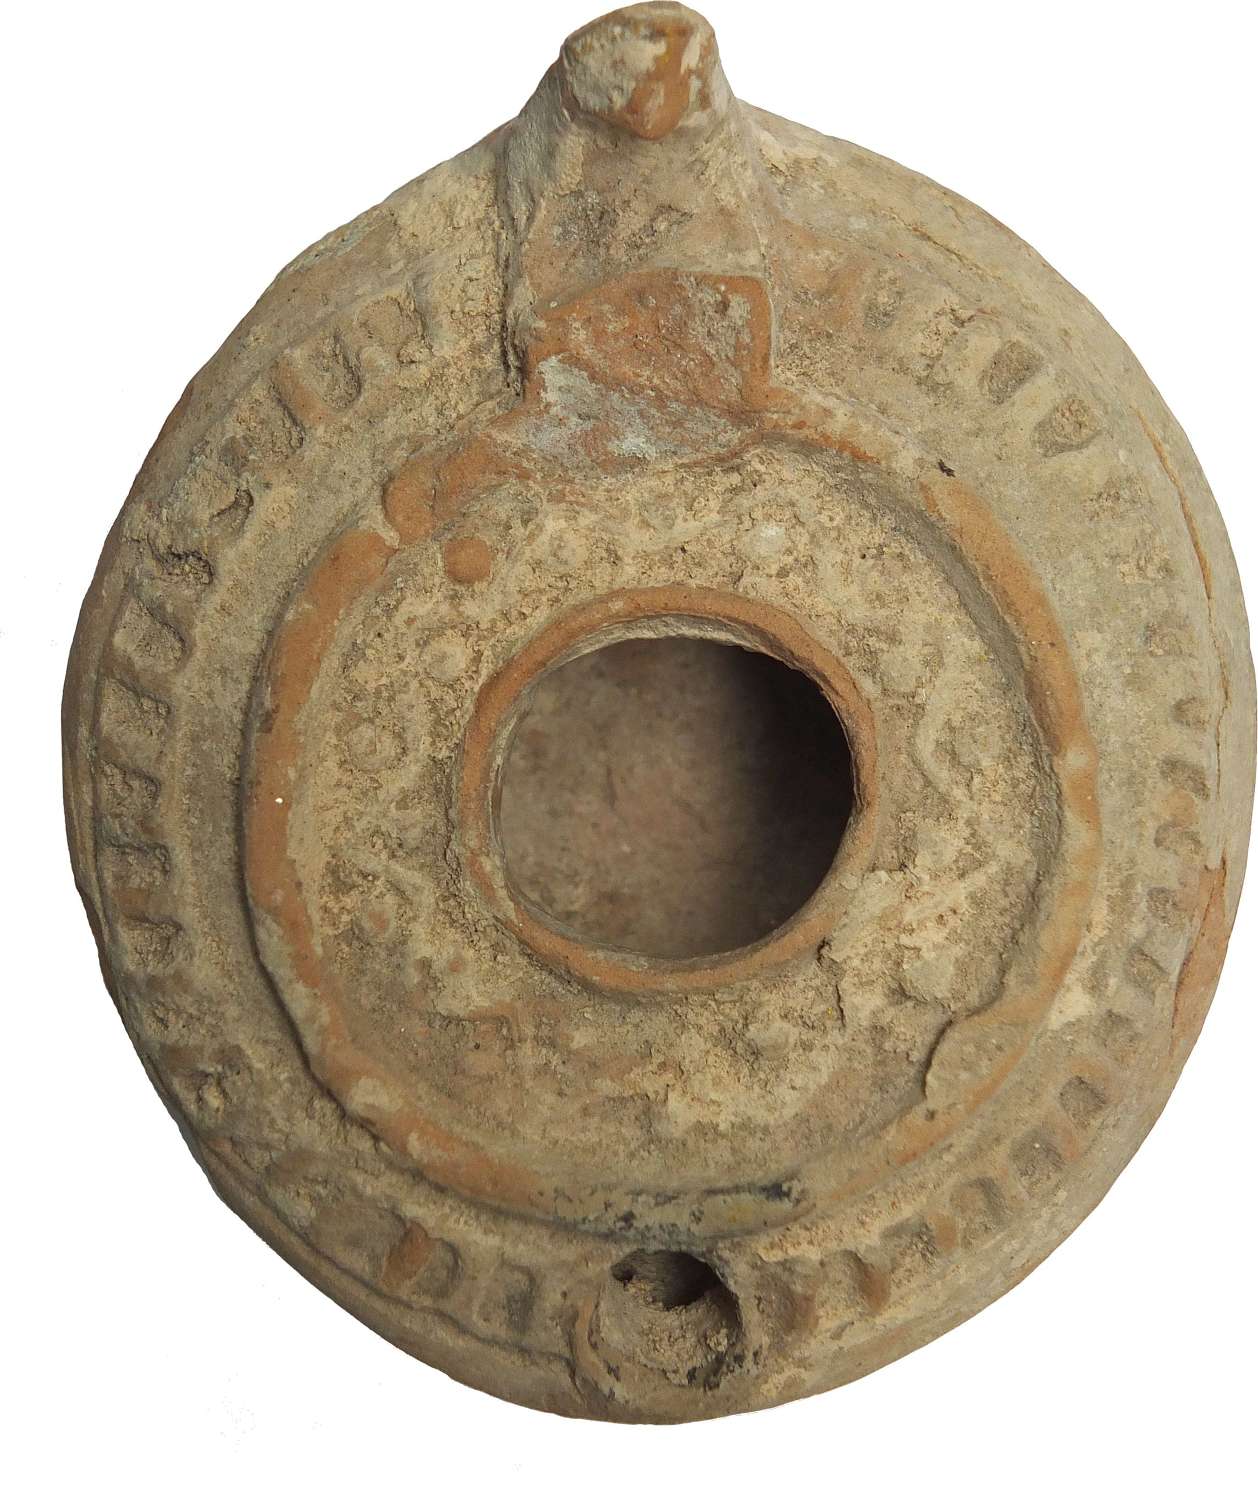 A fawn circular terracotta oil lamp, c. 600-800 A.D.